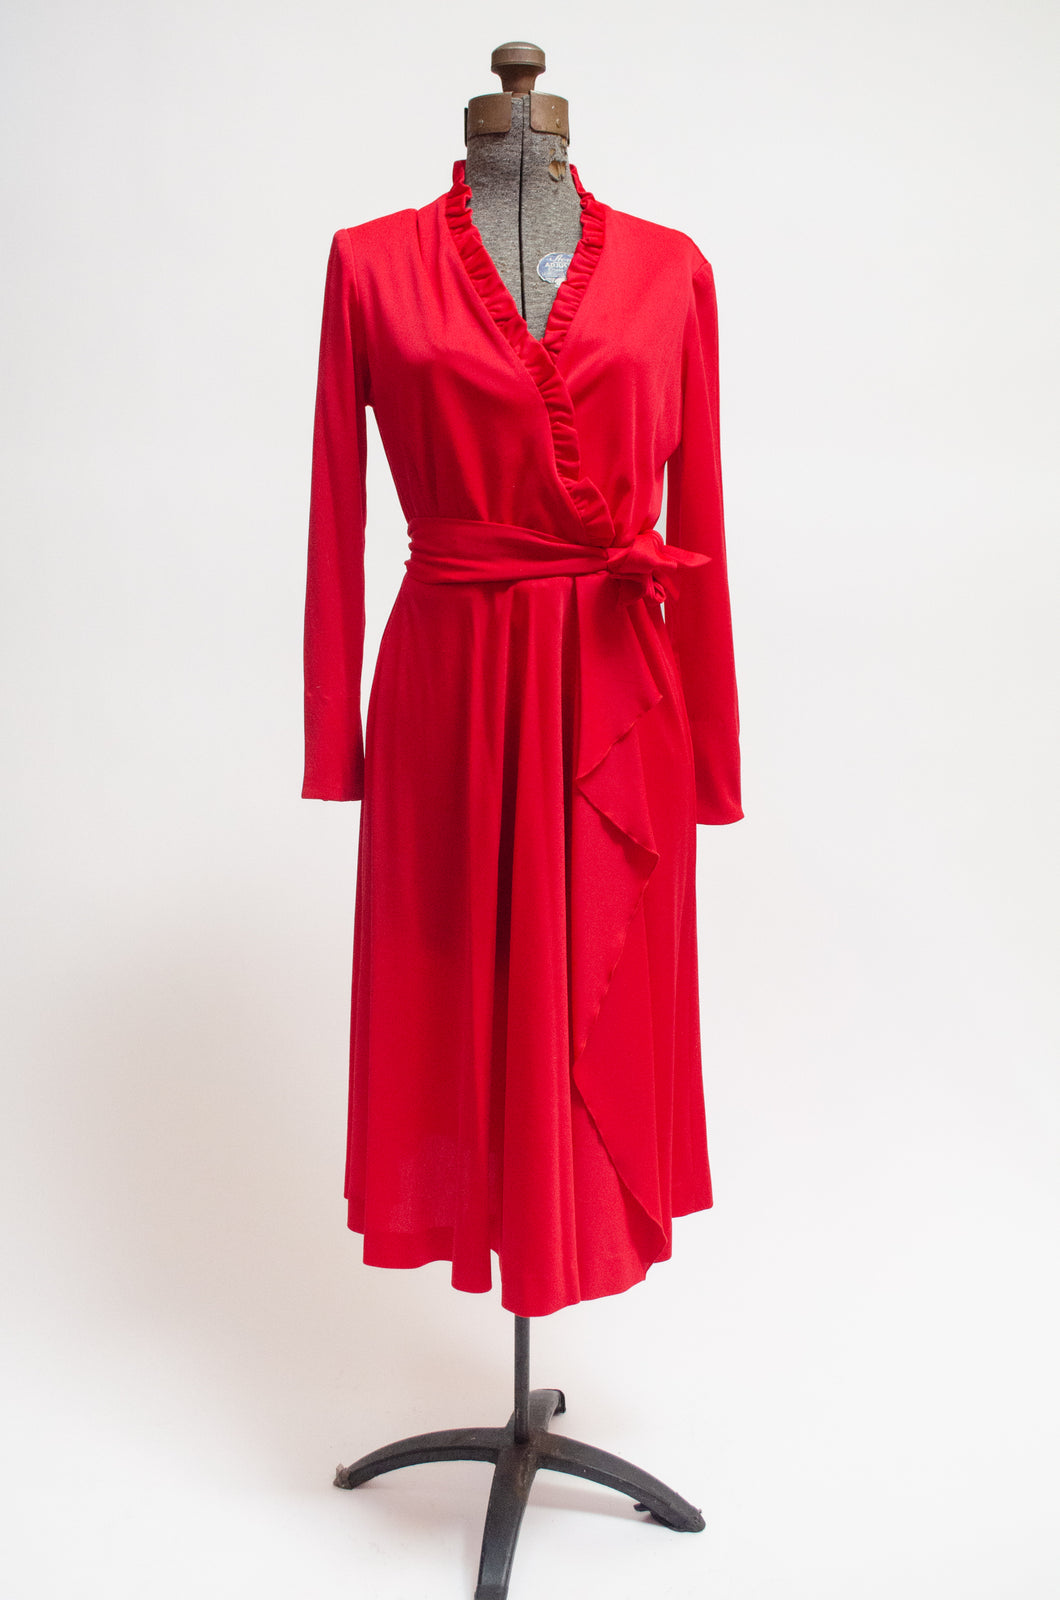 70s cherry red wrap dress with rhinestone